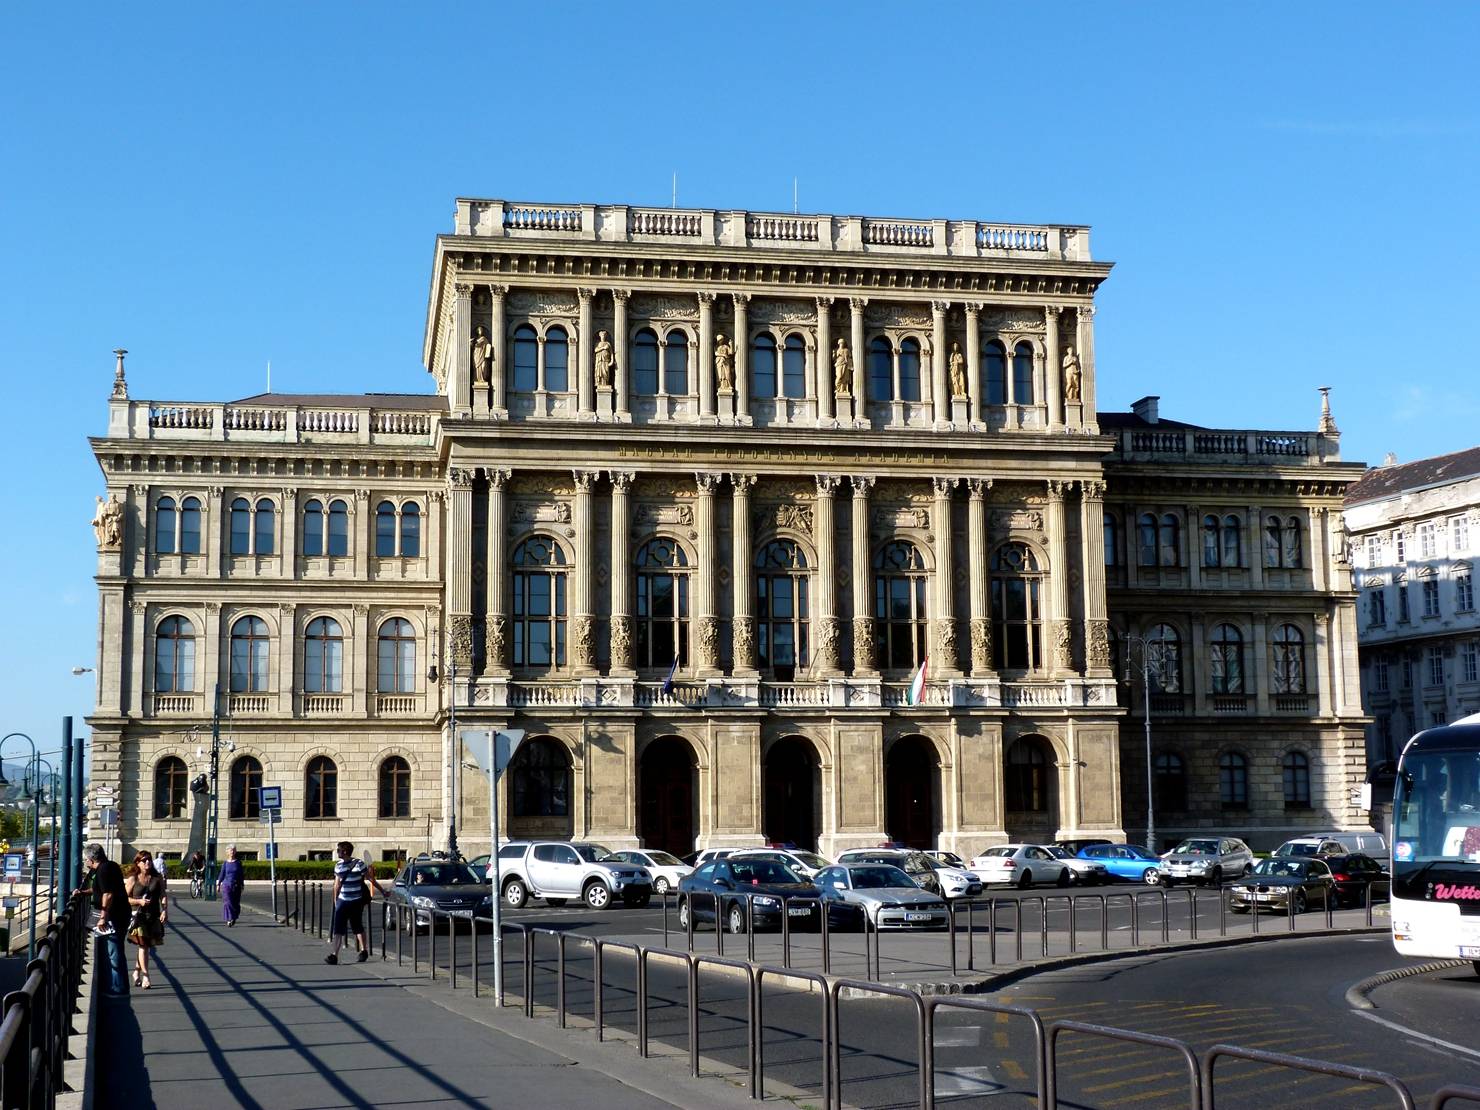 匈牙利科学院所采用的是意大利新文艺复兴式建筑风格,它始建于1825年